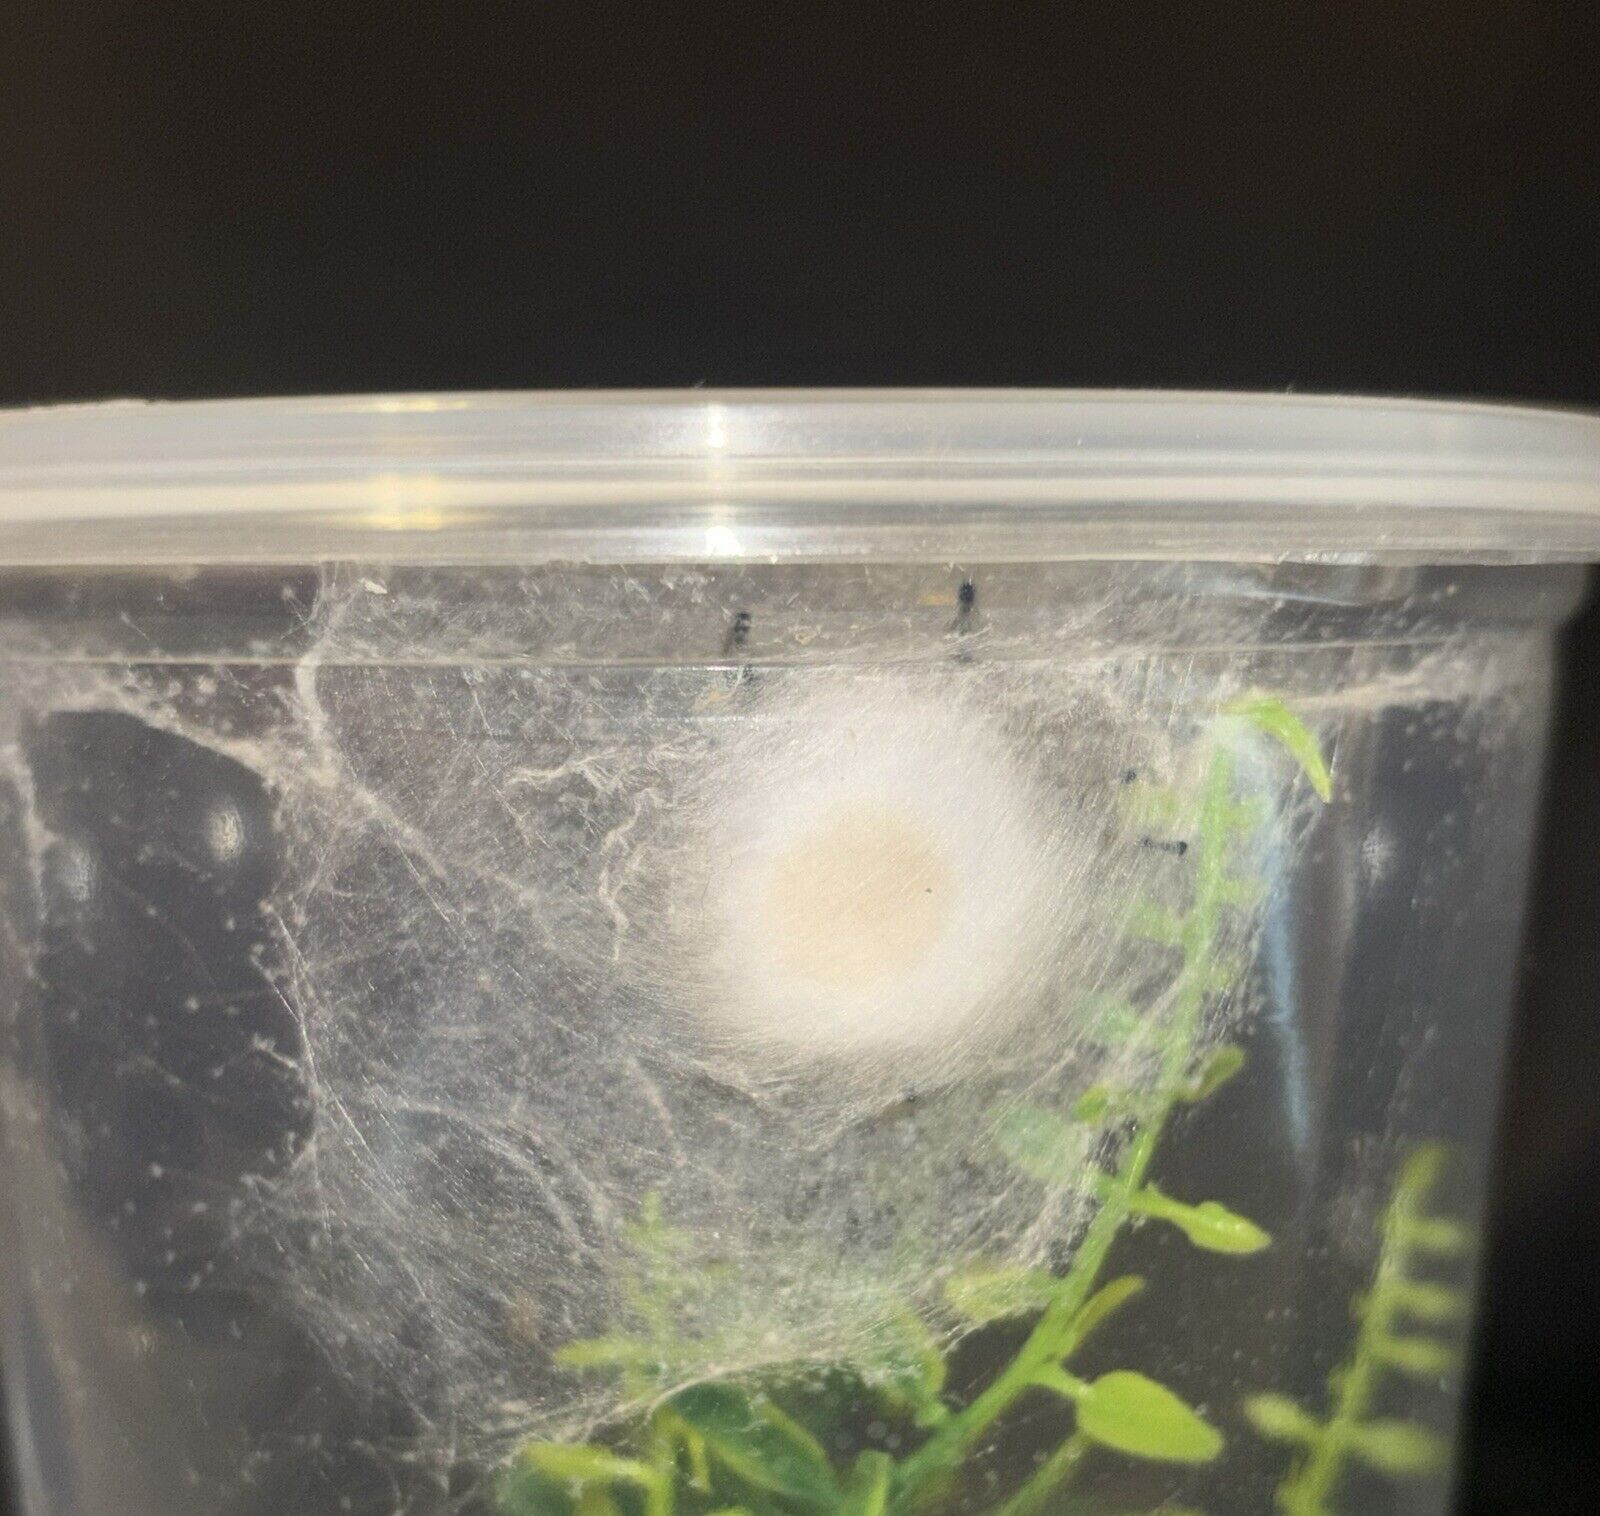 Regal Jumping Spider Egg Sac (phidippus regius)